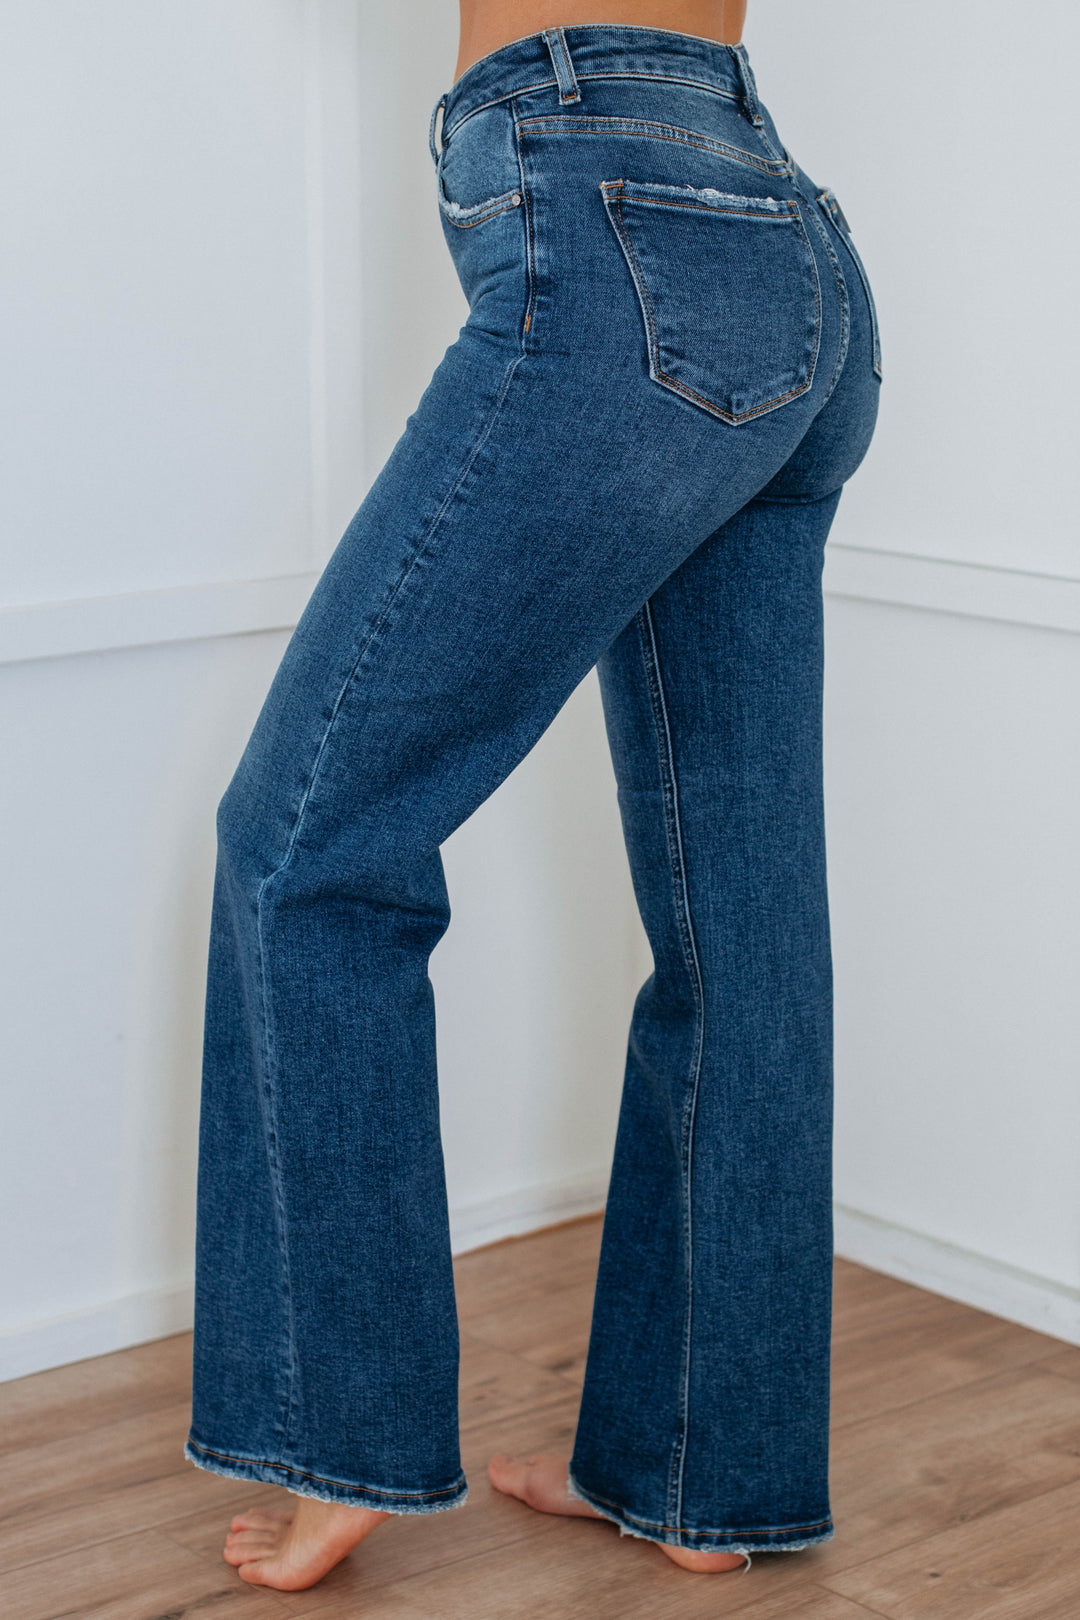 Jenea Risen Jeans